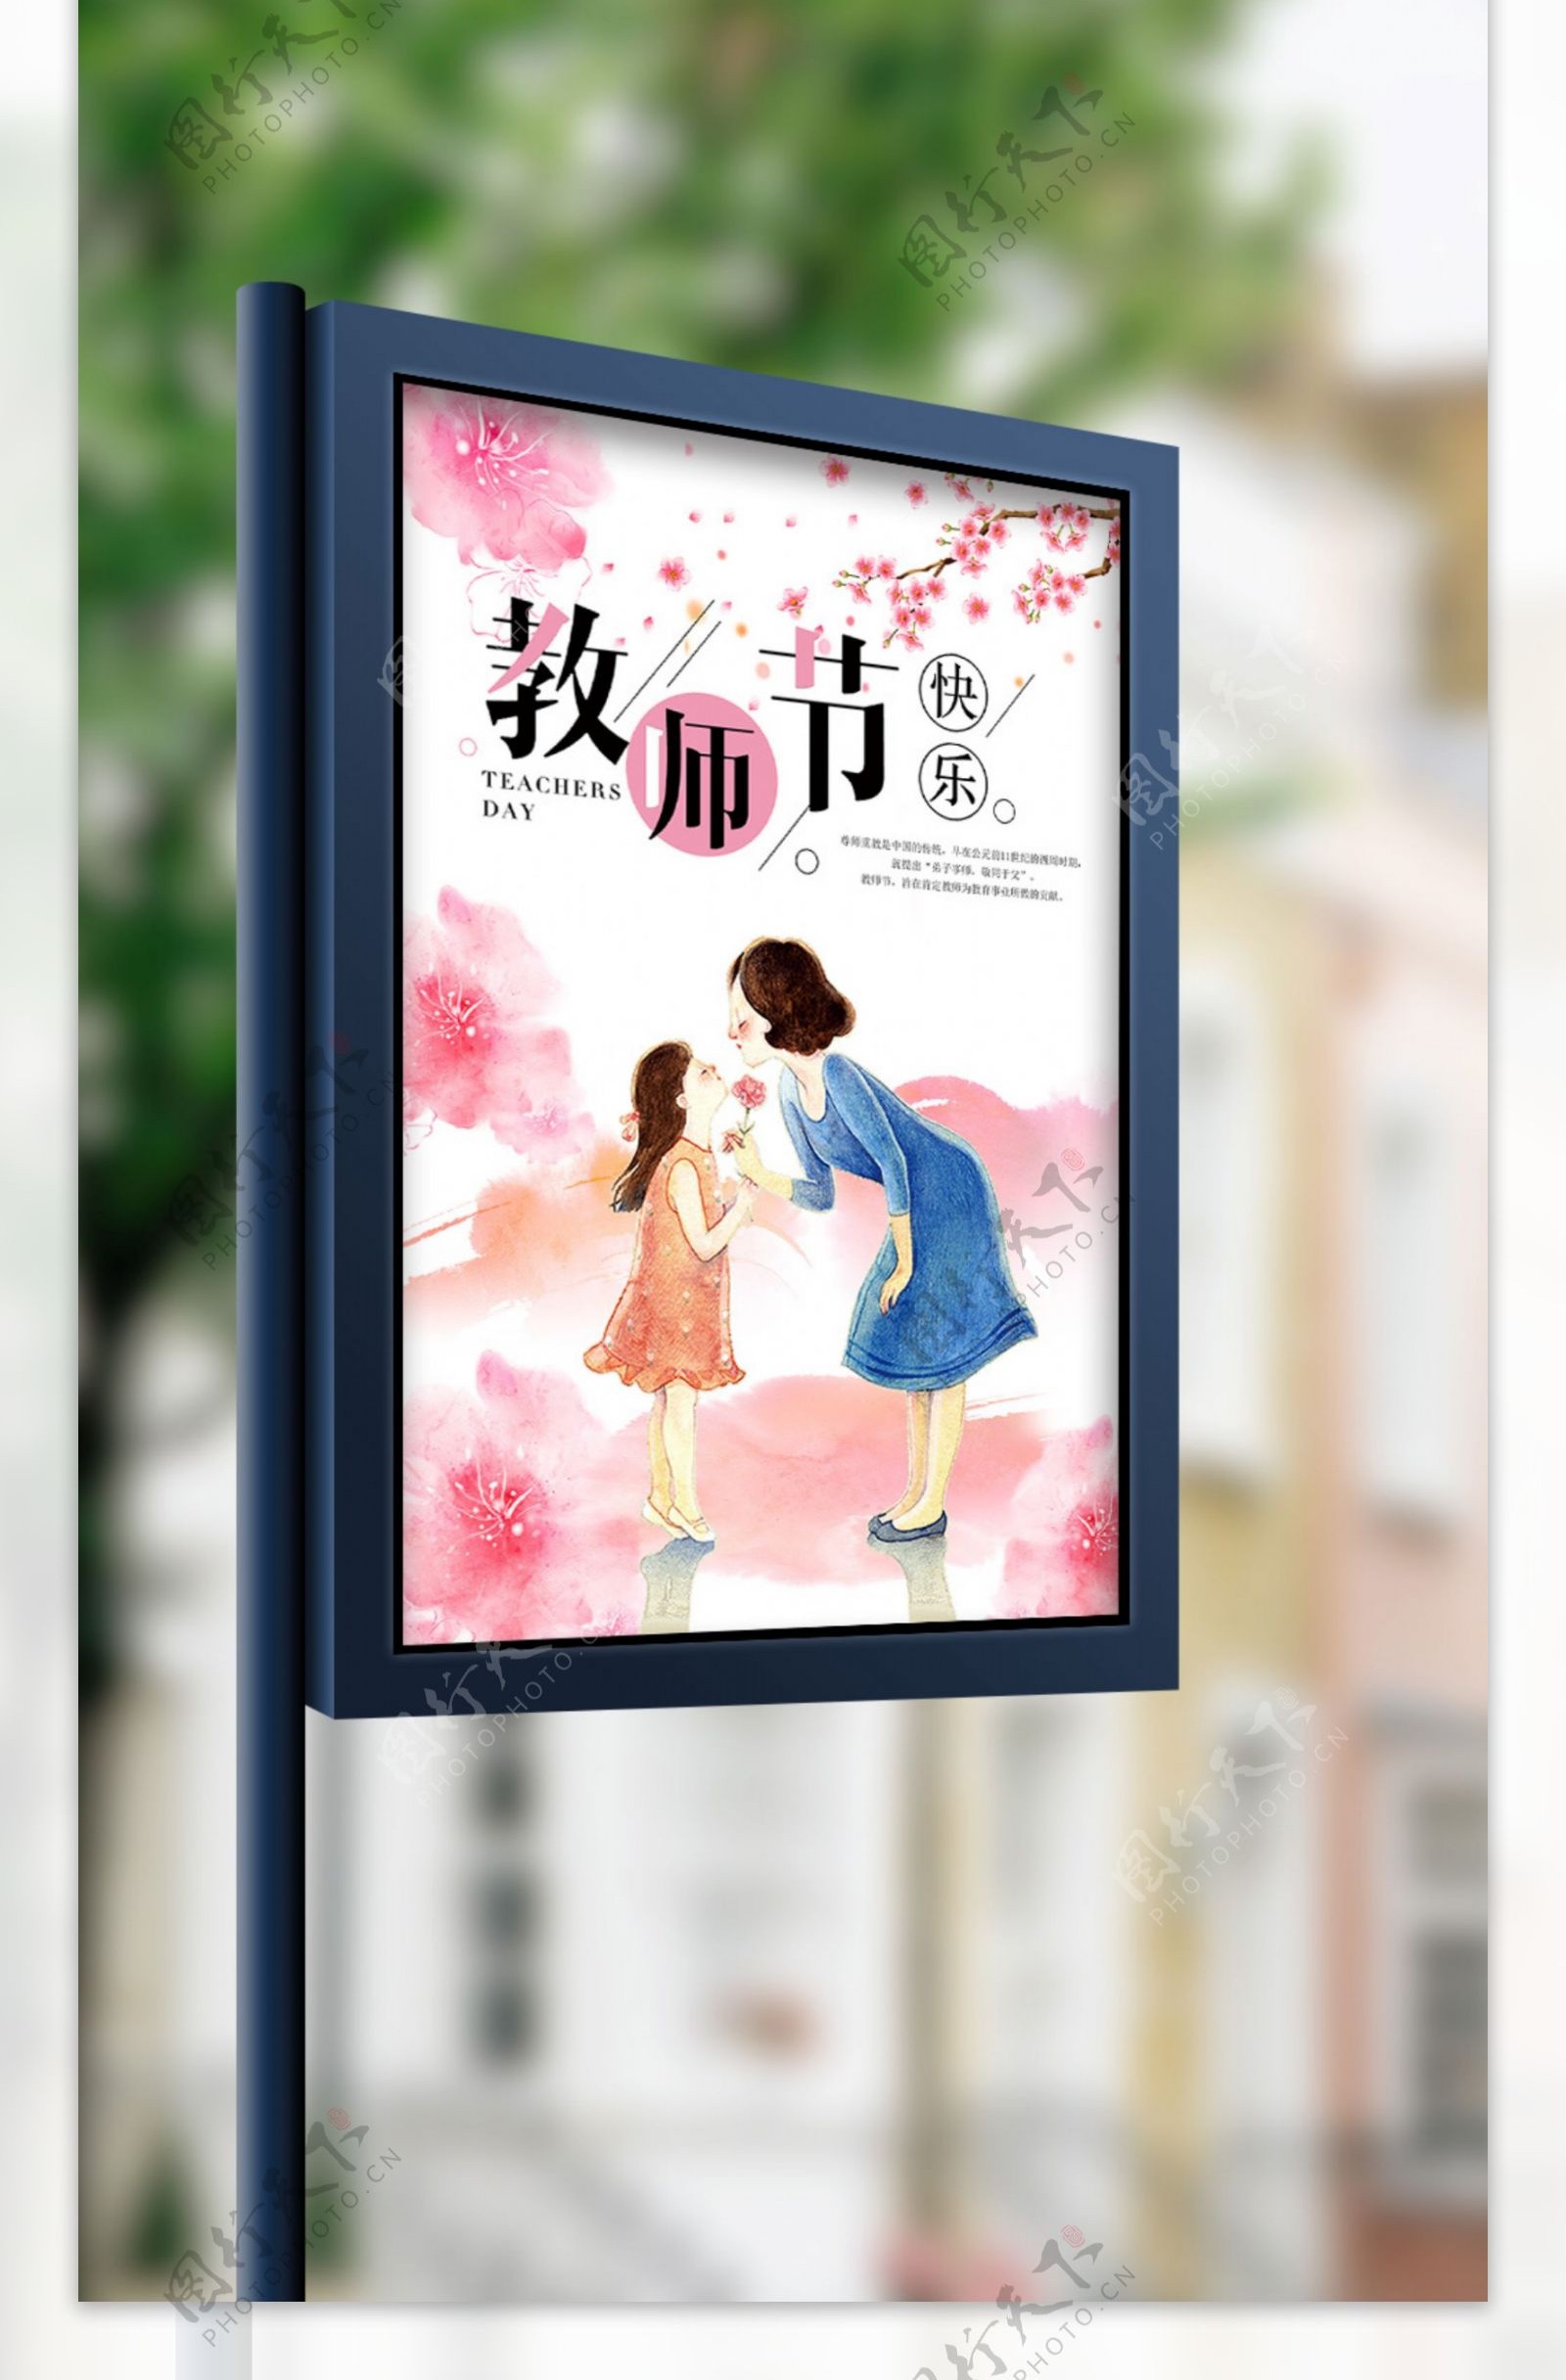 紫色创意中国风教师节海报